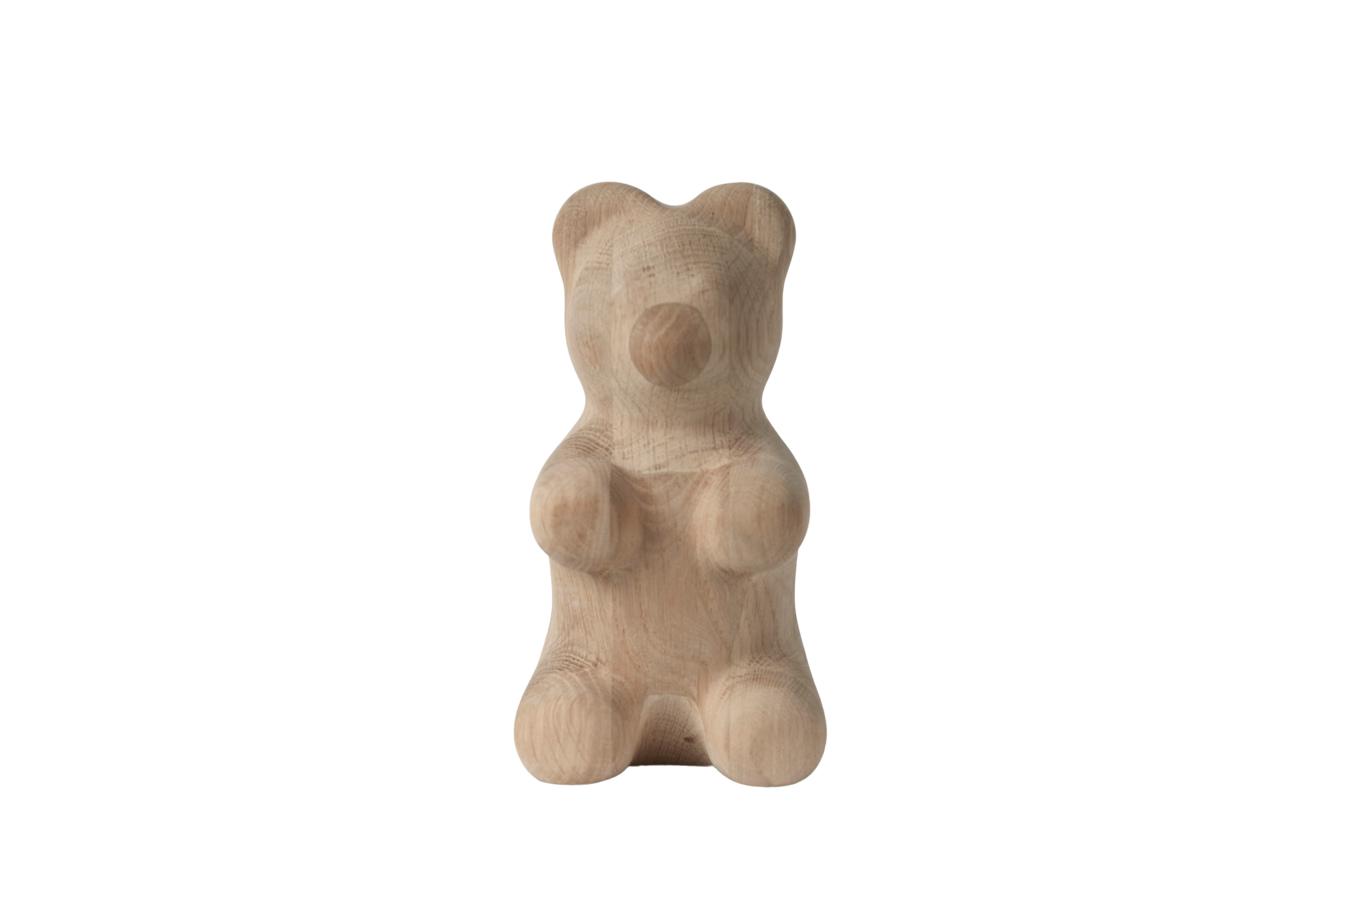 Boyhood Gummy björn dekorativ figur ek, stor